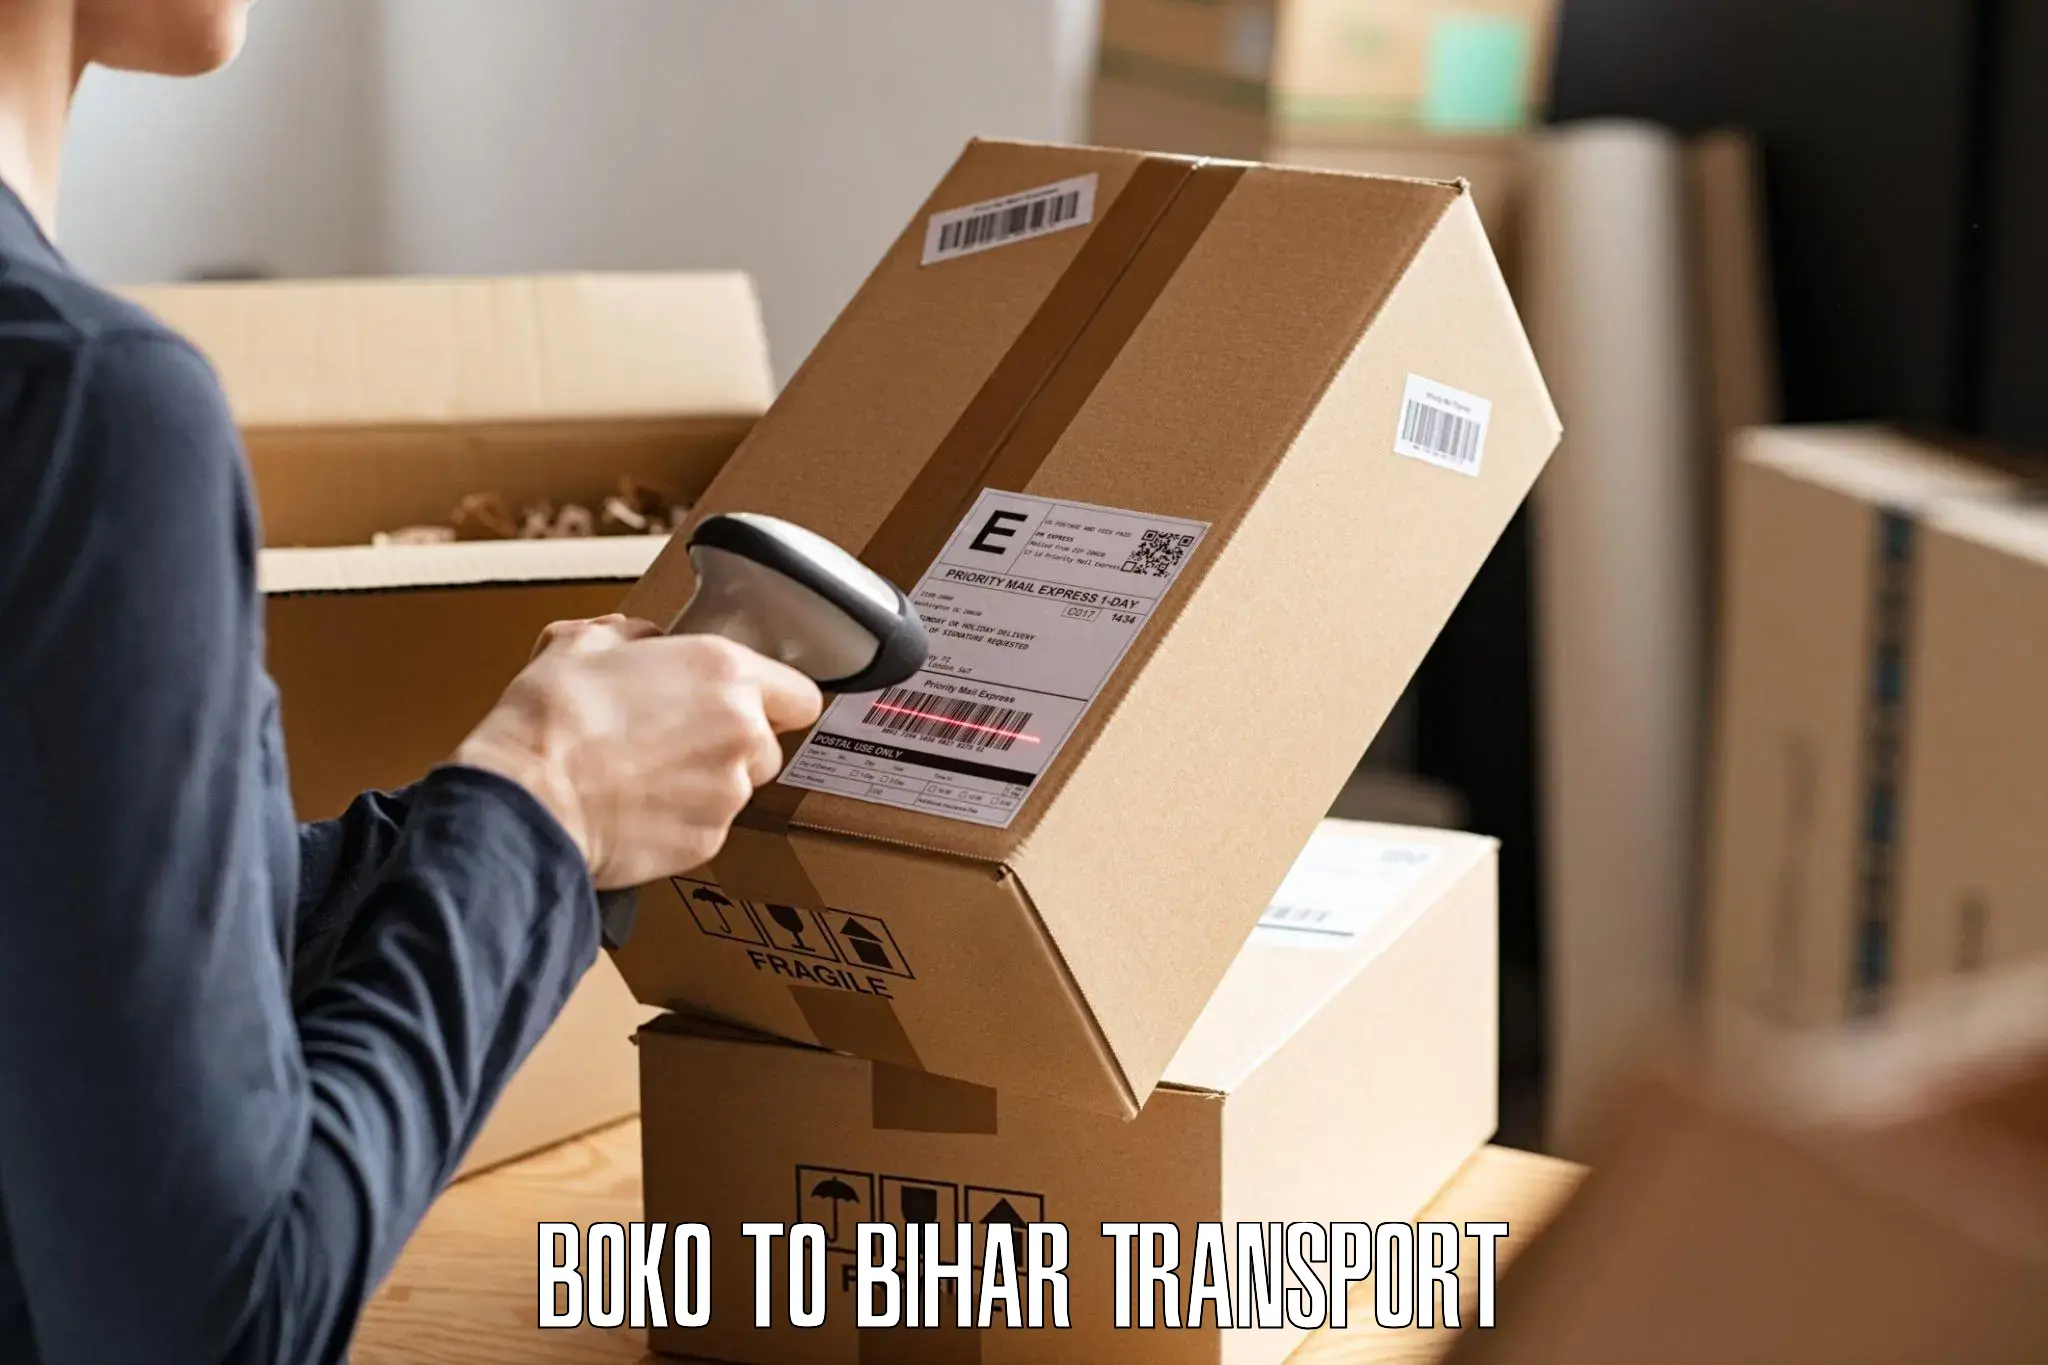 Pick up transport service Boko to Tekari